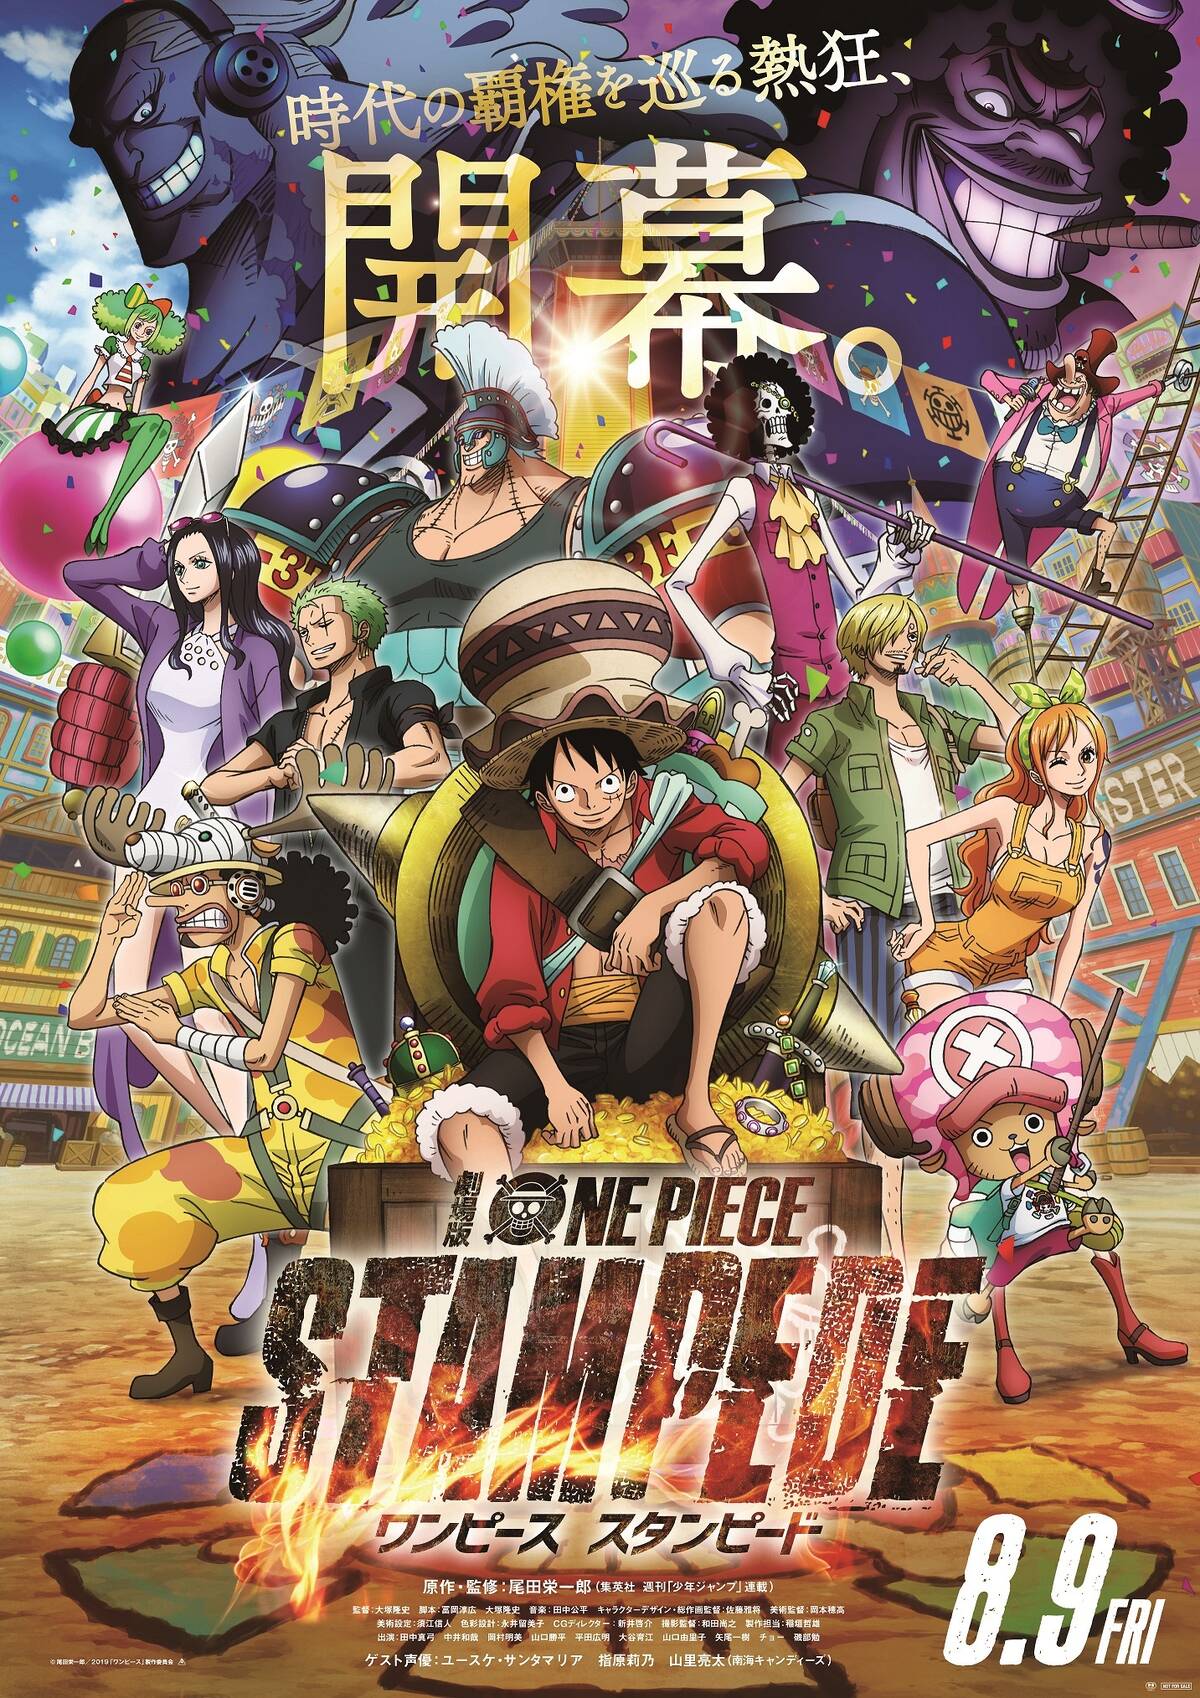 劇場版 One Piece Stampede キャラクター勢揃いのポスタービジュアル 総勢38人のキャラが登場する第3弾特報が解禁 アキバ総研